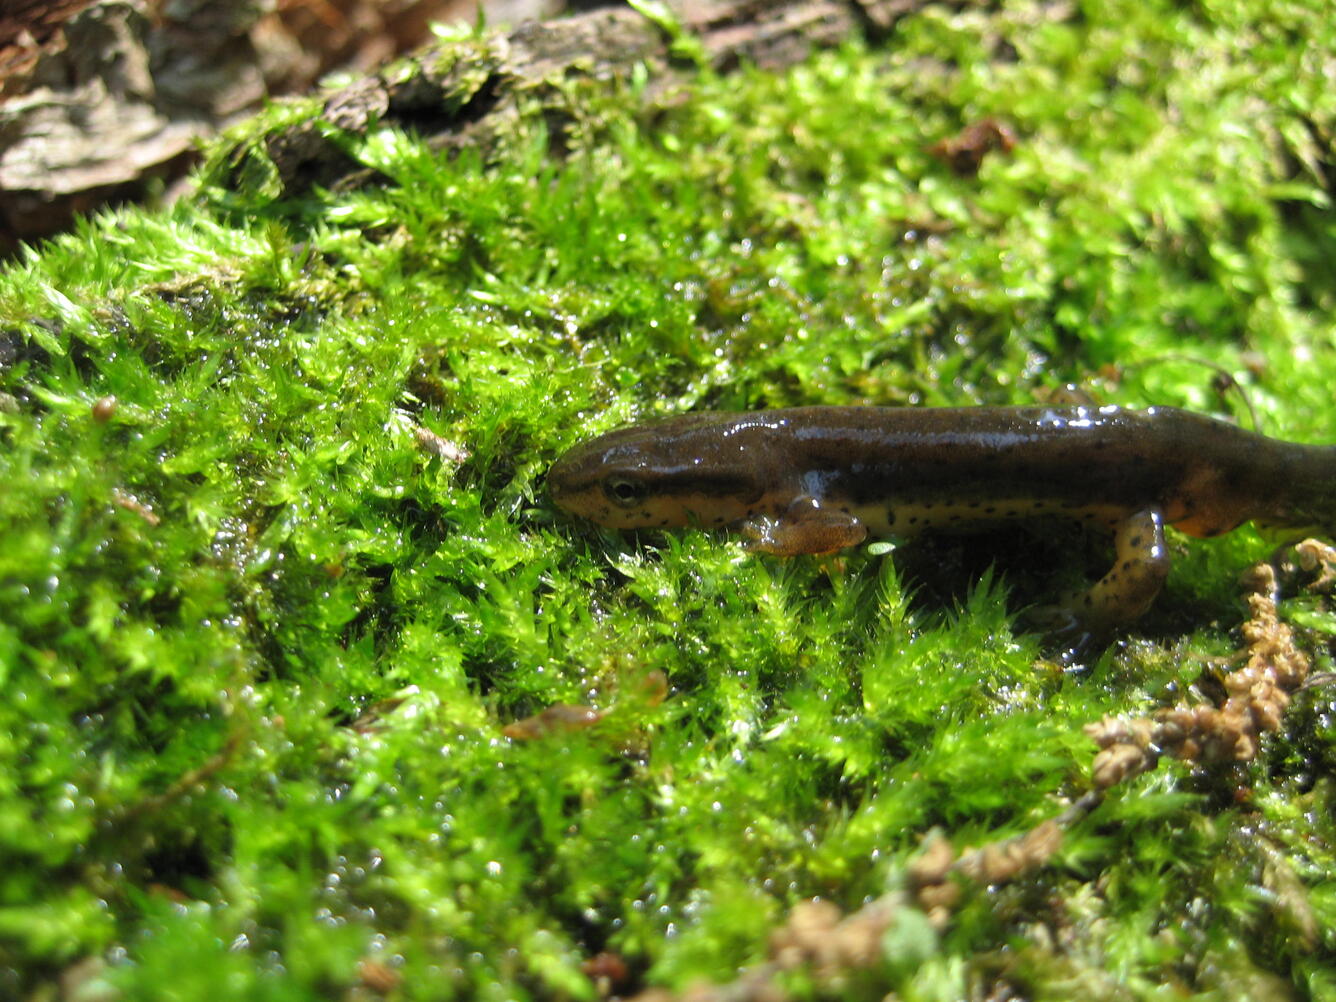 A brown newt on green moss.